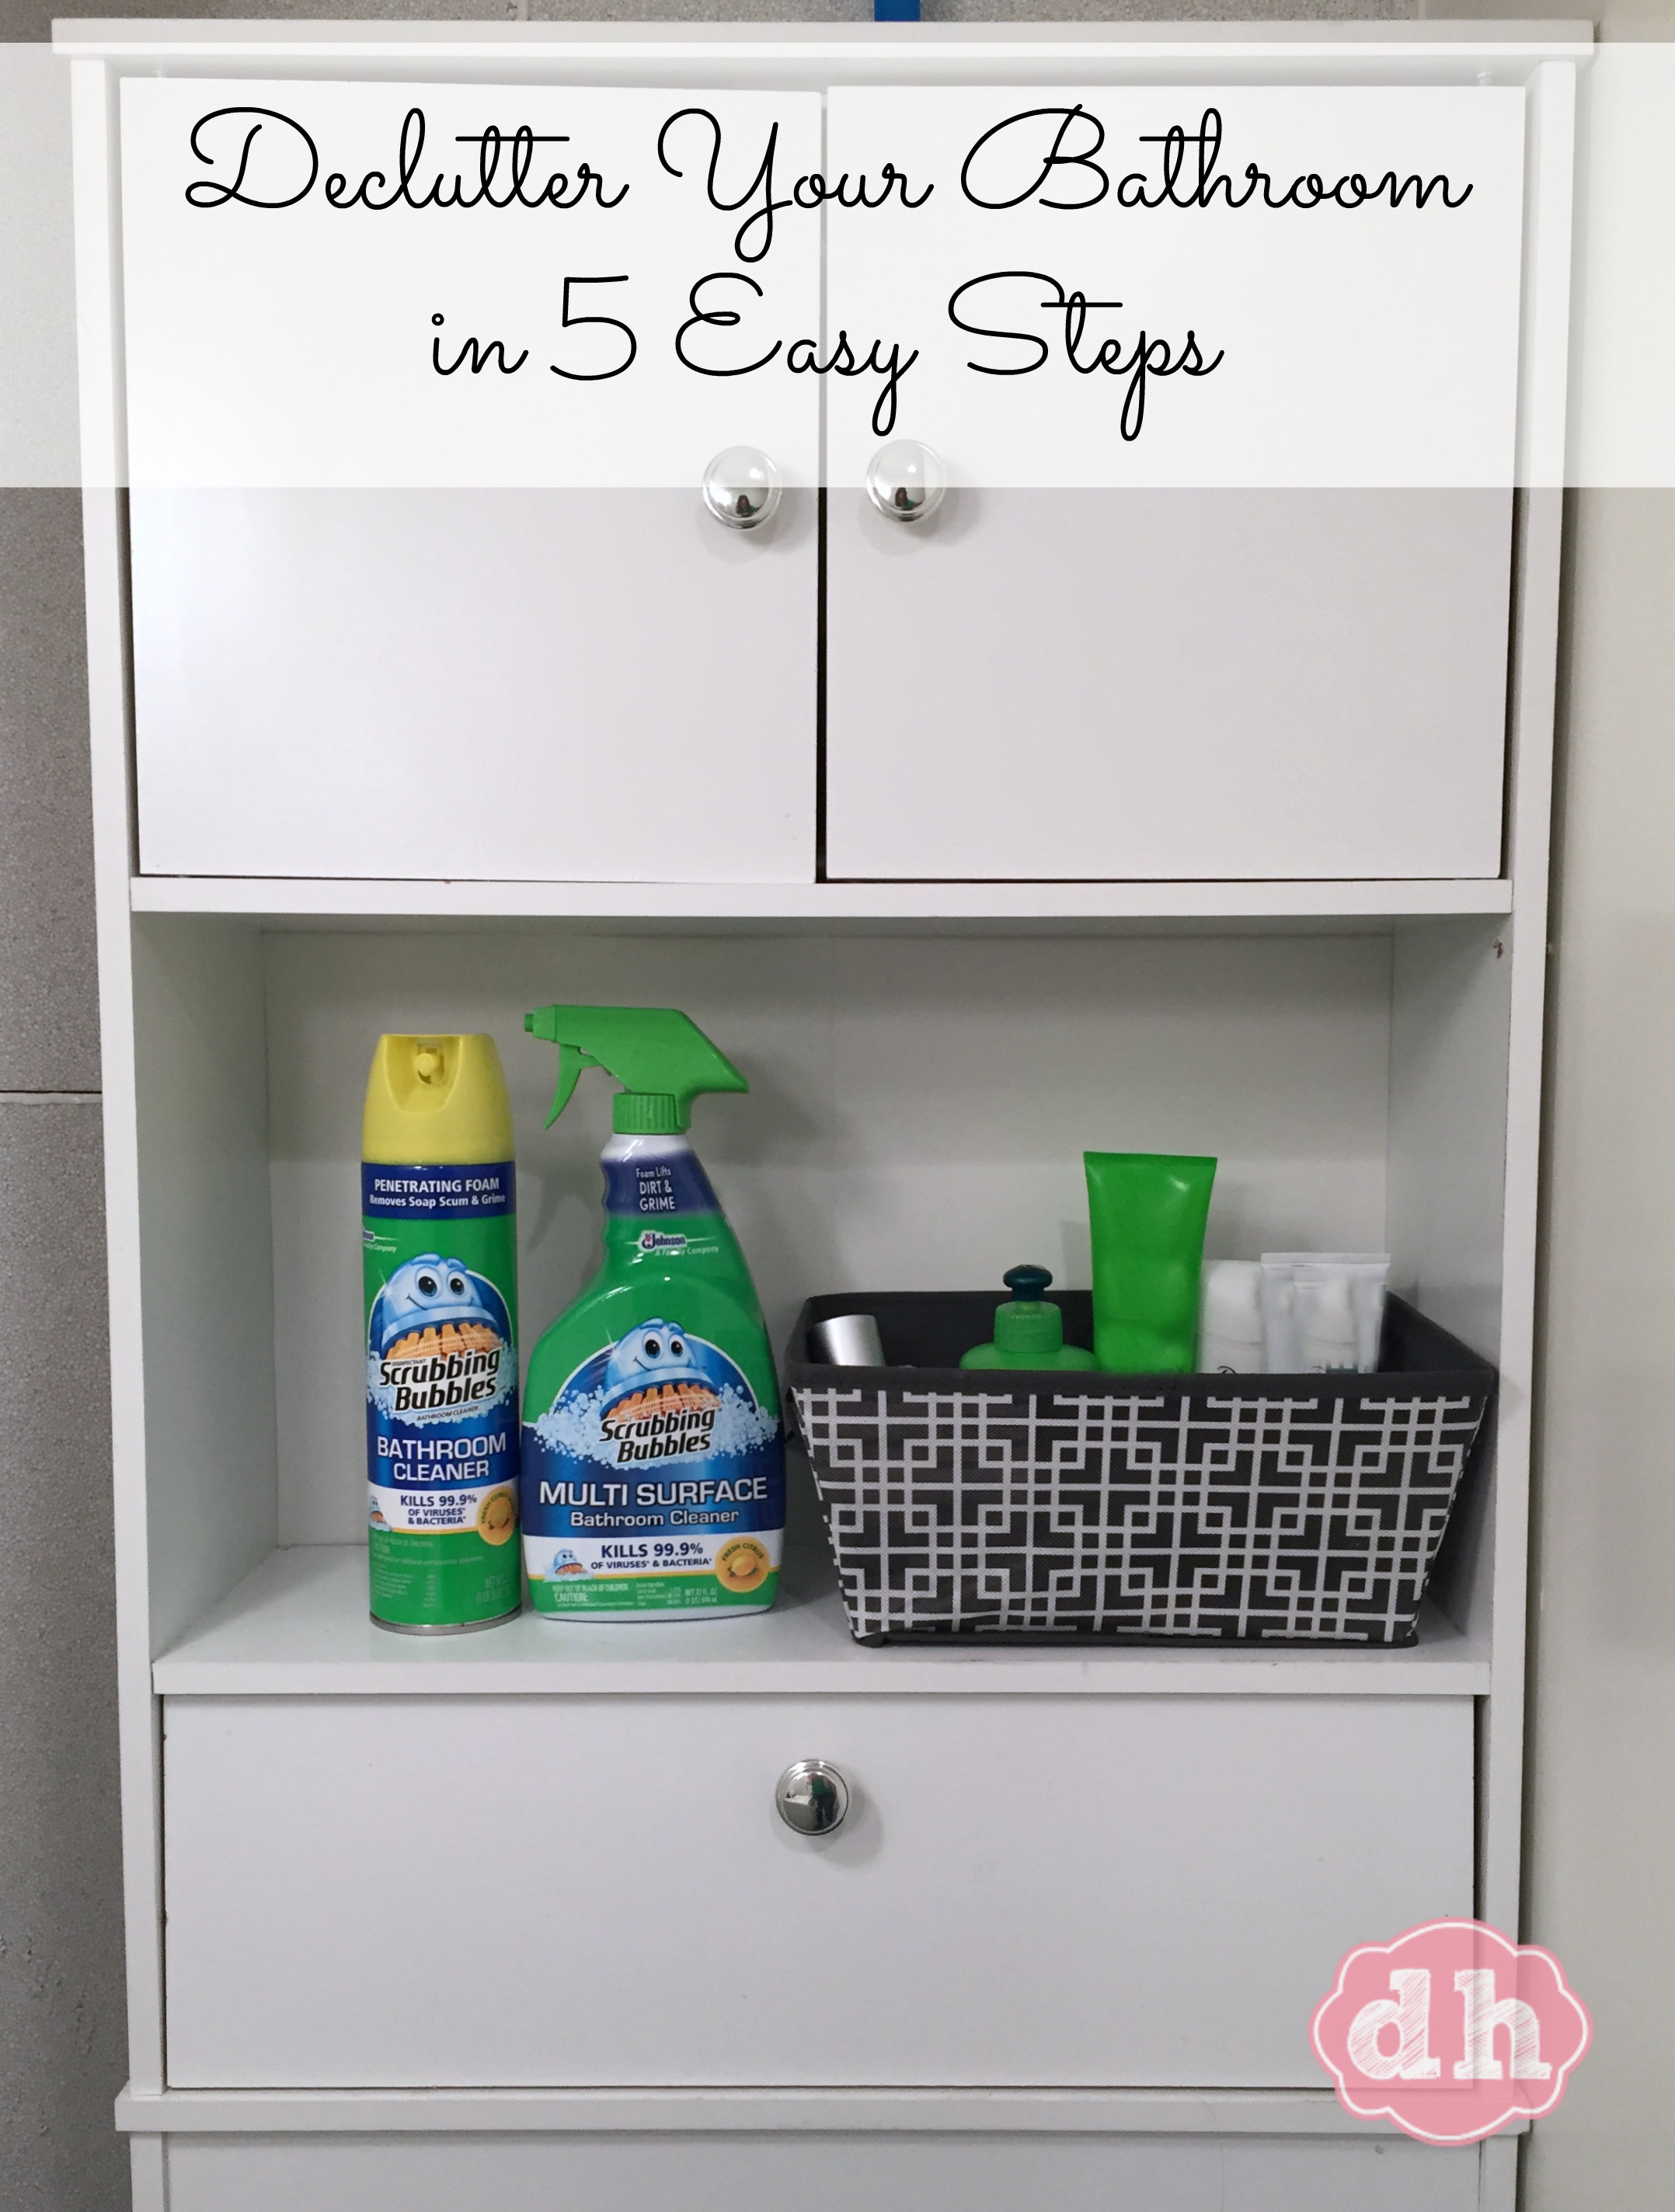 De-clutter Your Bathroom in 5 Easy Steps